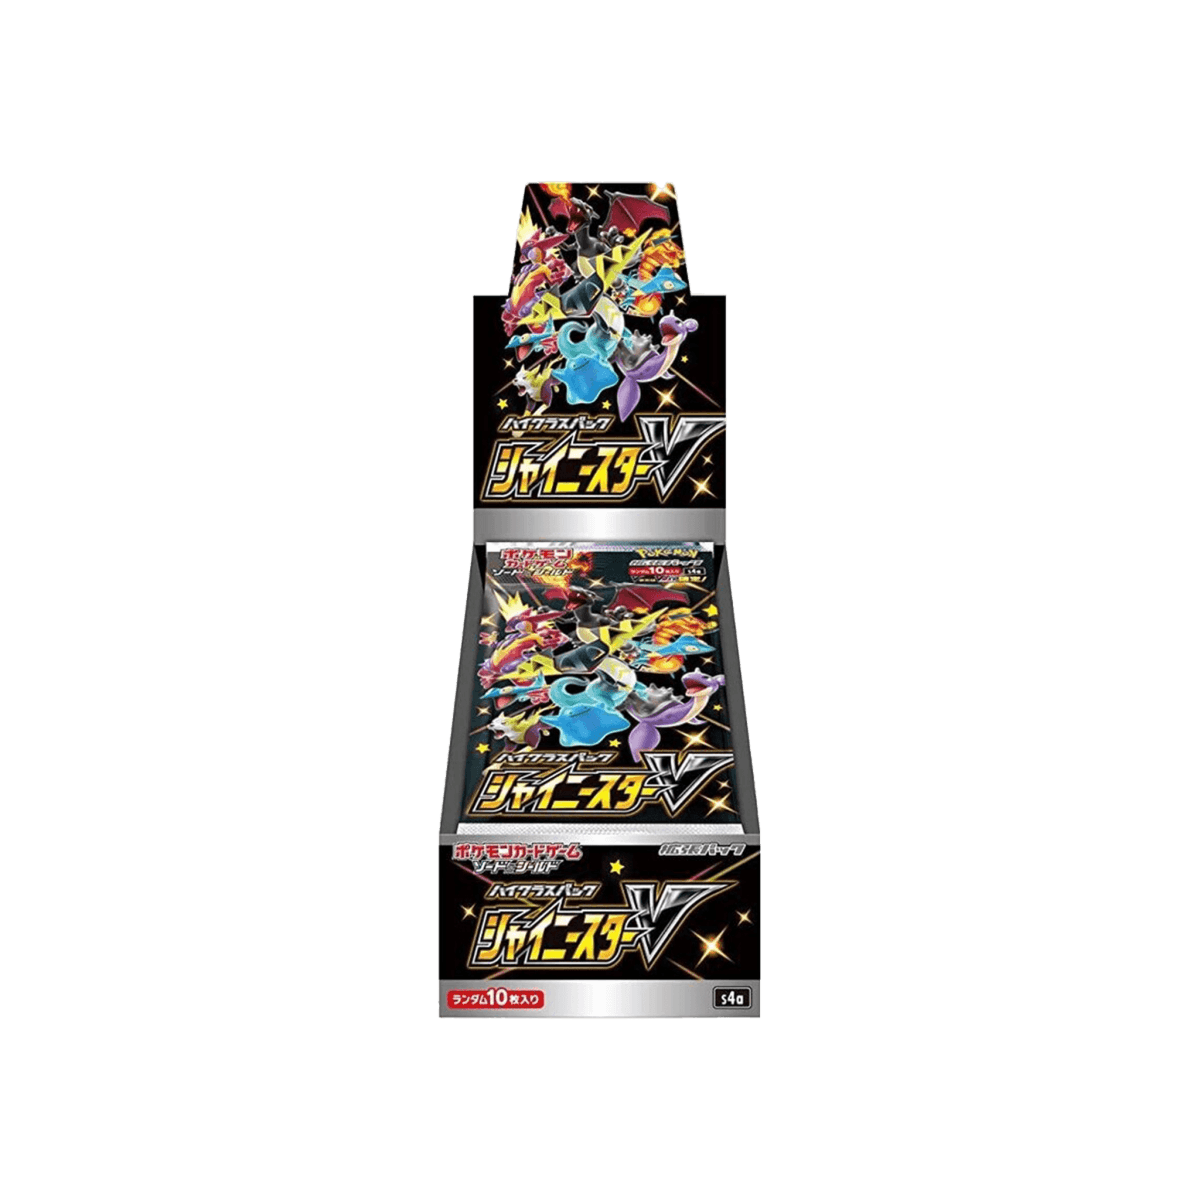 Pokémon TCG - Shiny Star V Booster Box - Cardmaniac.ch